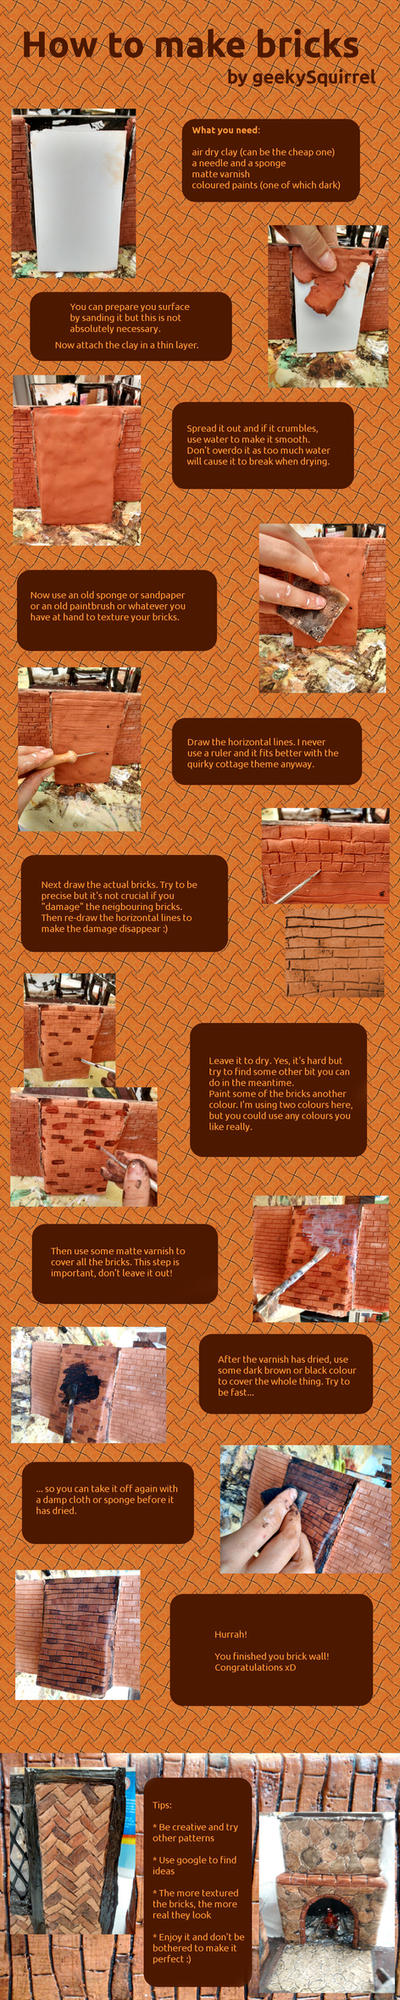 How to make bricks by geekySquirrel on DeviantArt